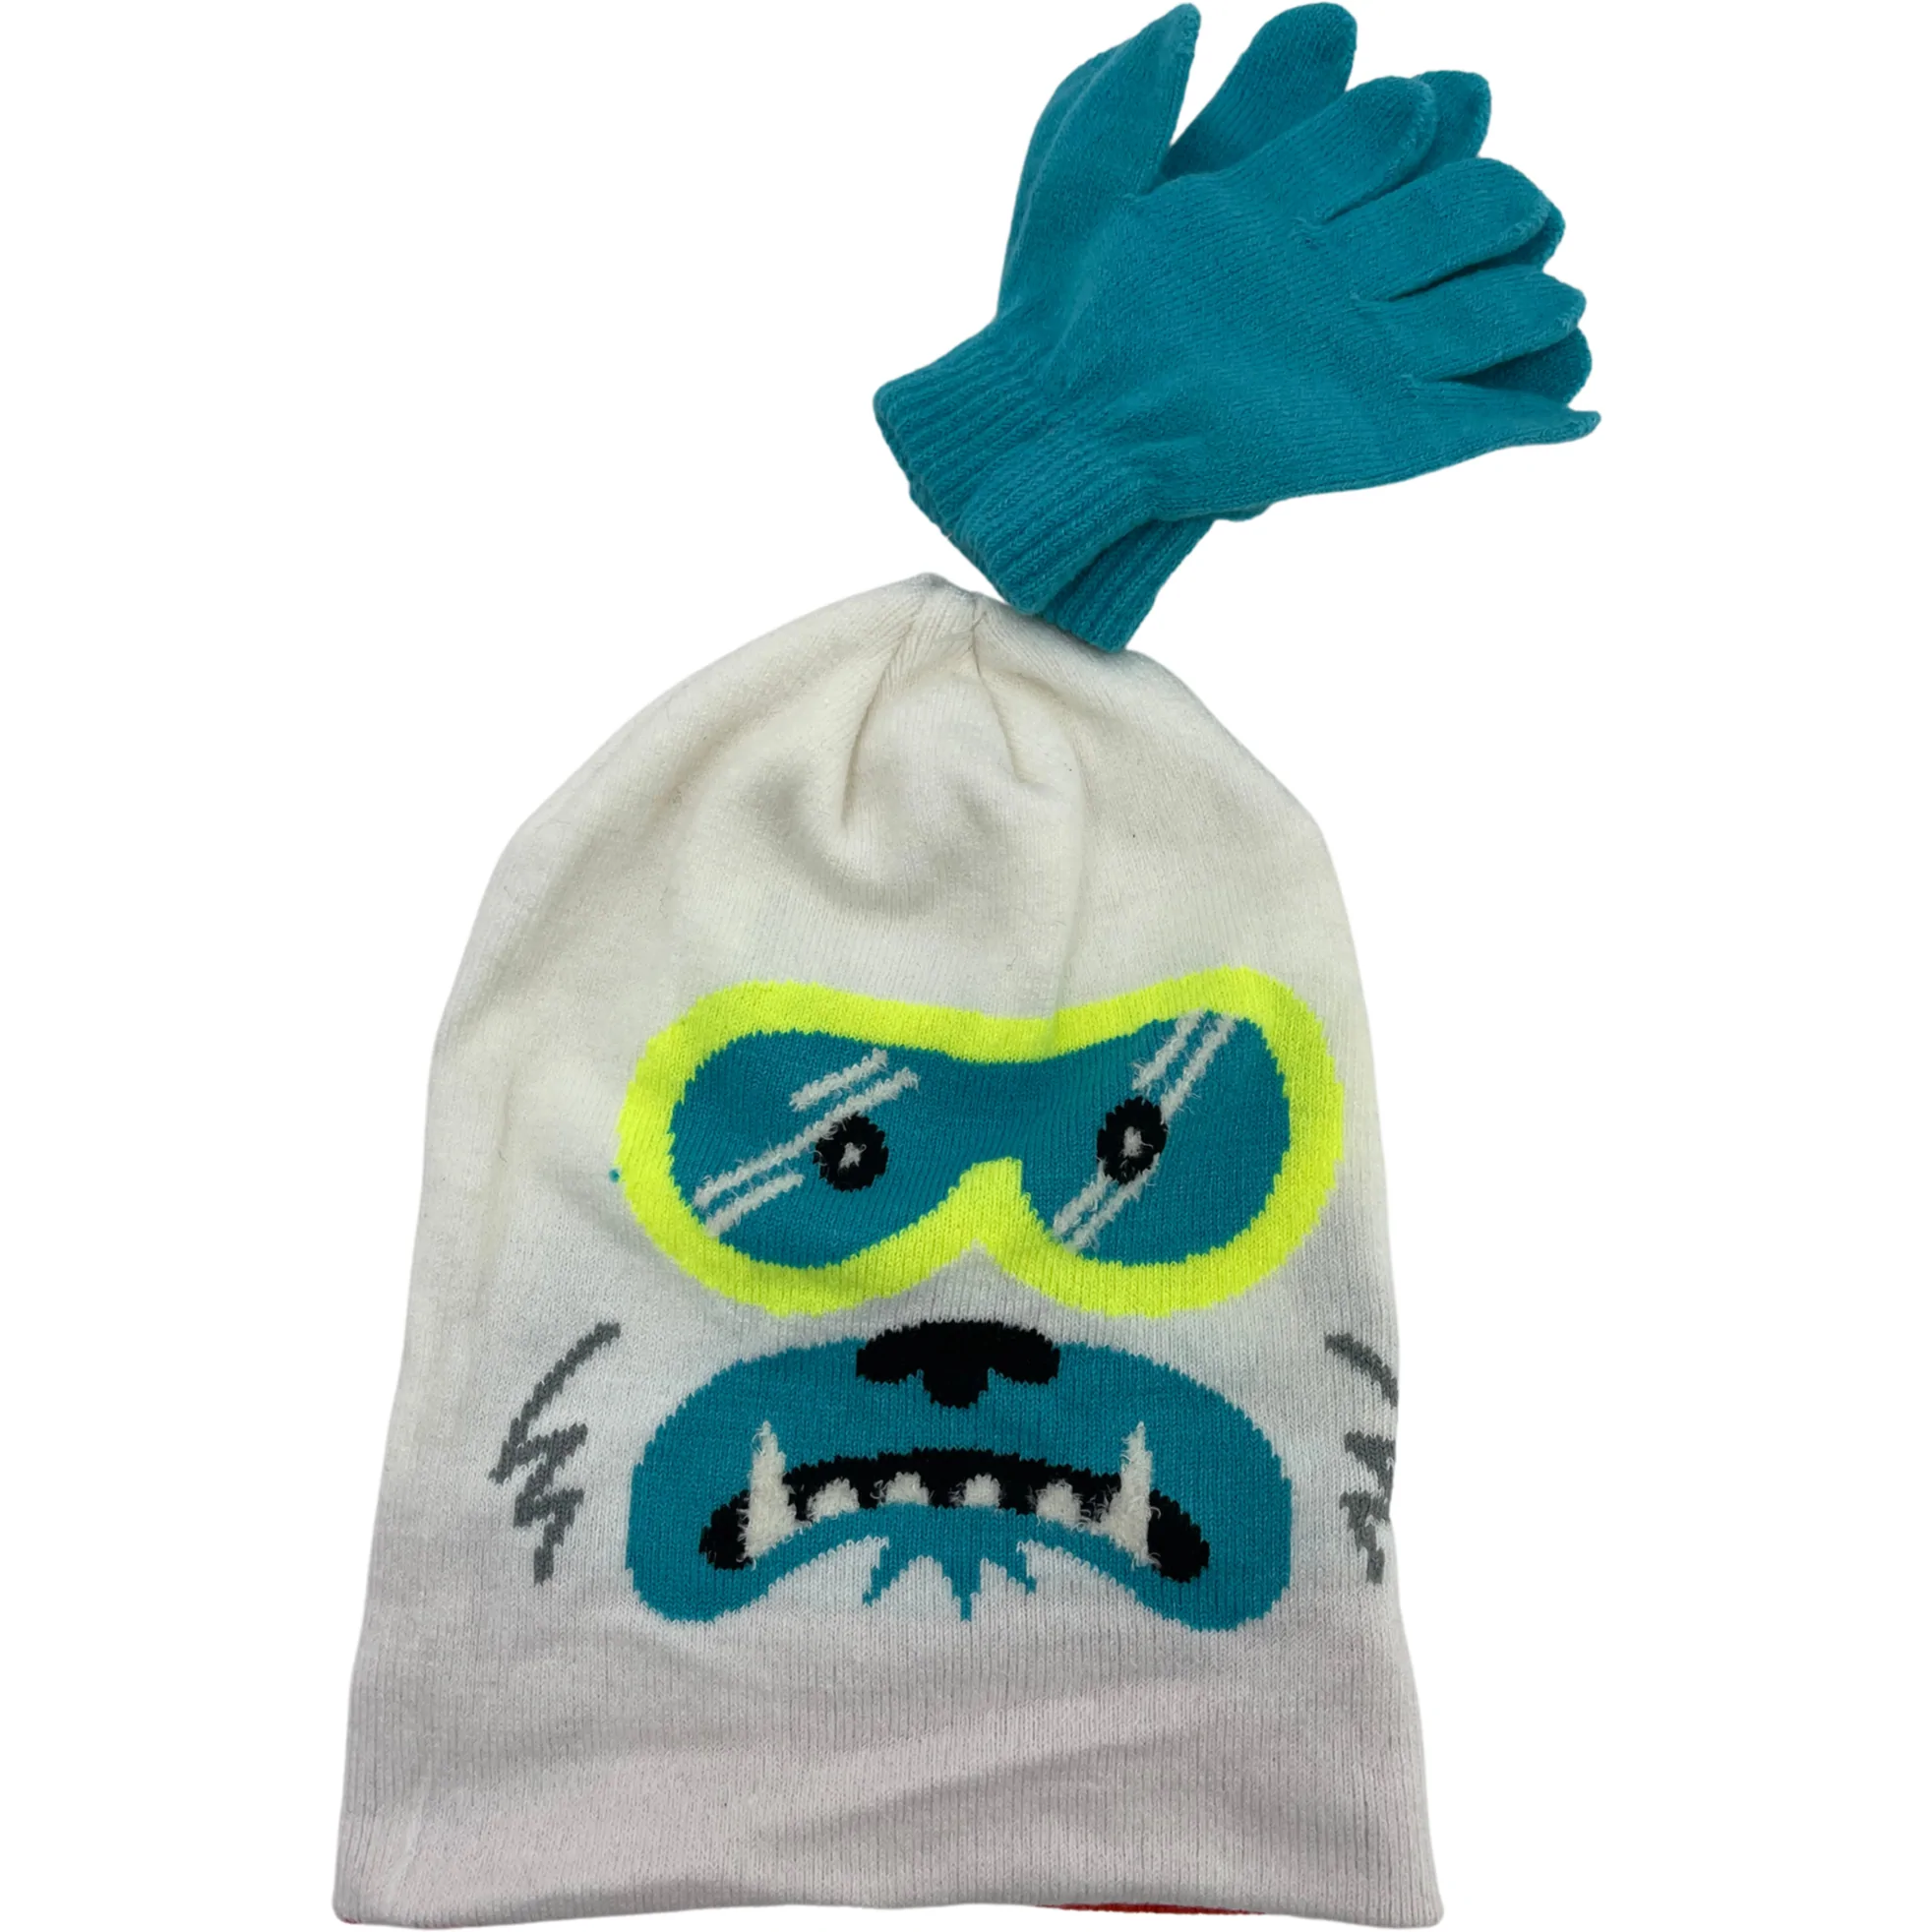 Children's Winter Hat & Gloves Set / White, Blue & Orange / Kid's Winter Toque / Size 8-20